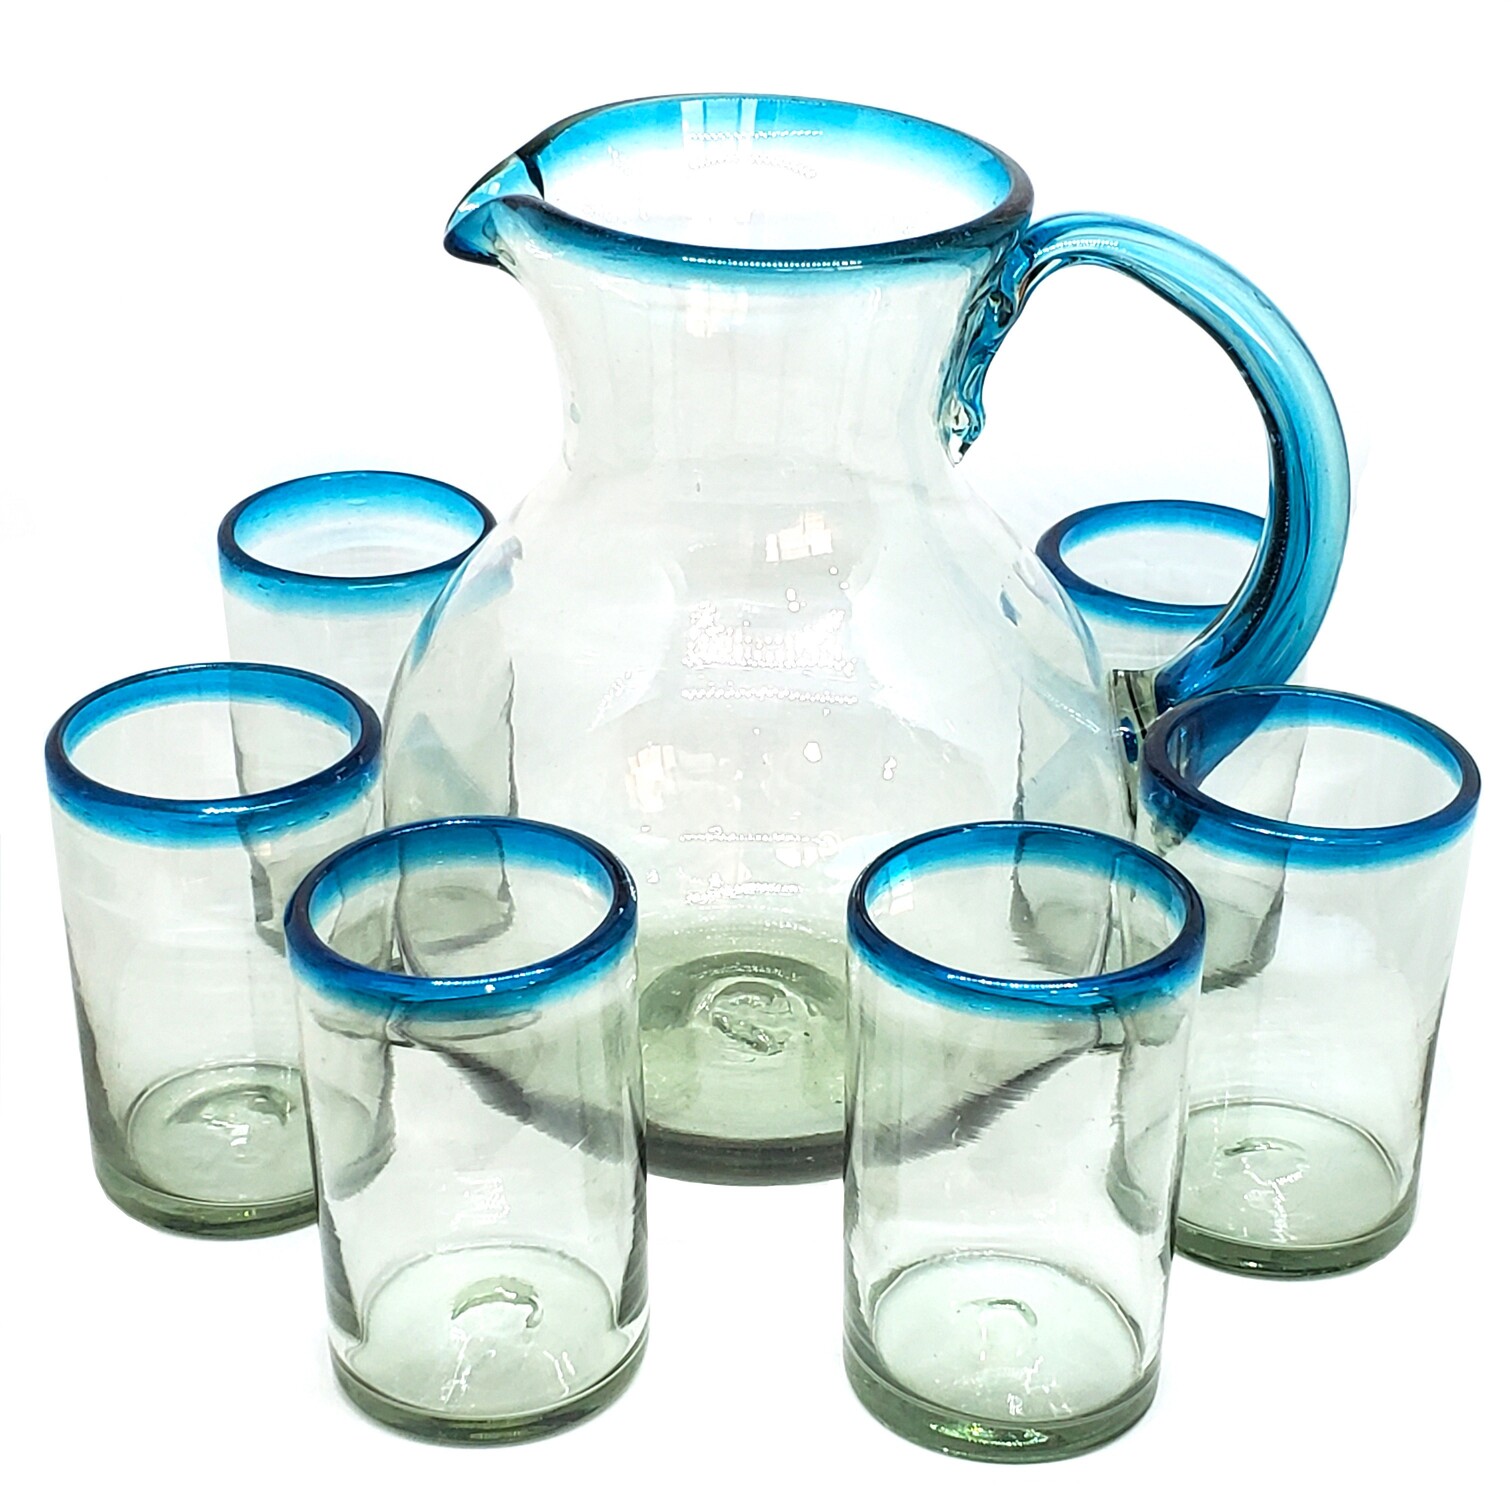 Novedades / Juego de jarra y 6 vasos grandes con borde azul aqua / Transp�rtese al mar caribe con �ste bello juego de jarra y vasos con borde azul aqua.